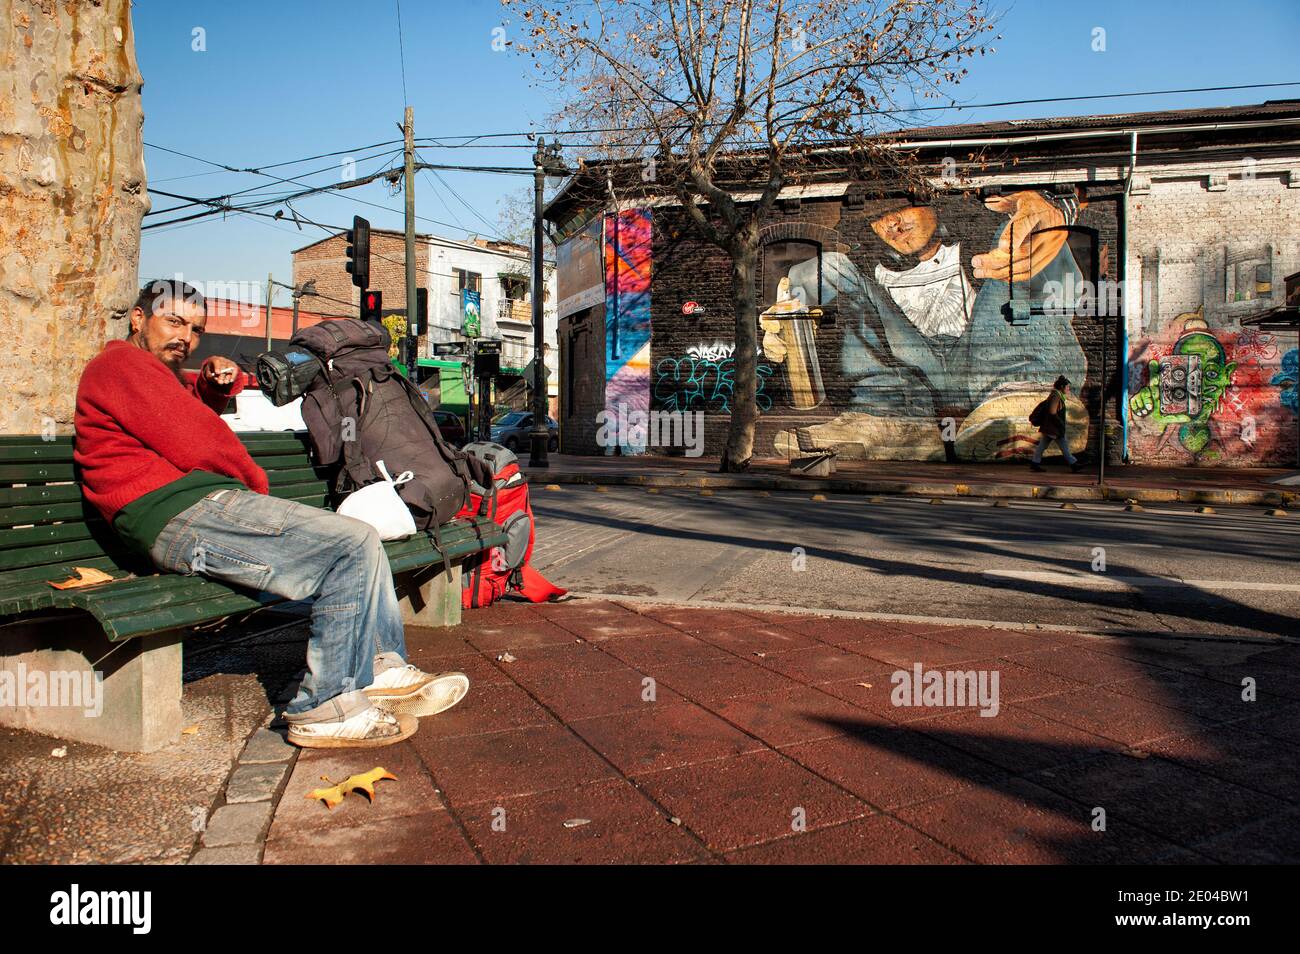 Sin hogar en la calle de Santiago de Chile, con graffiti de arte callejero detrás. Foto de stock